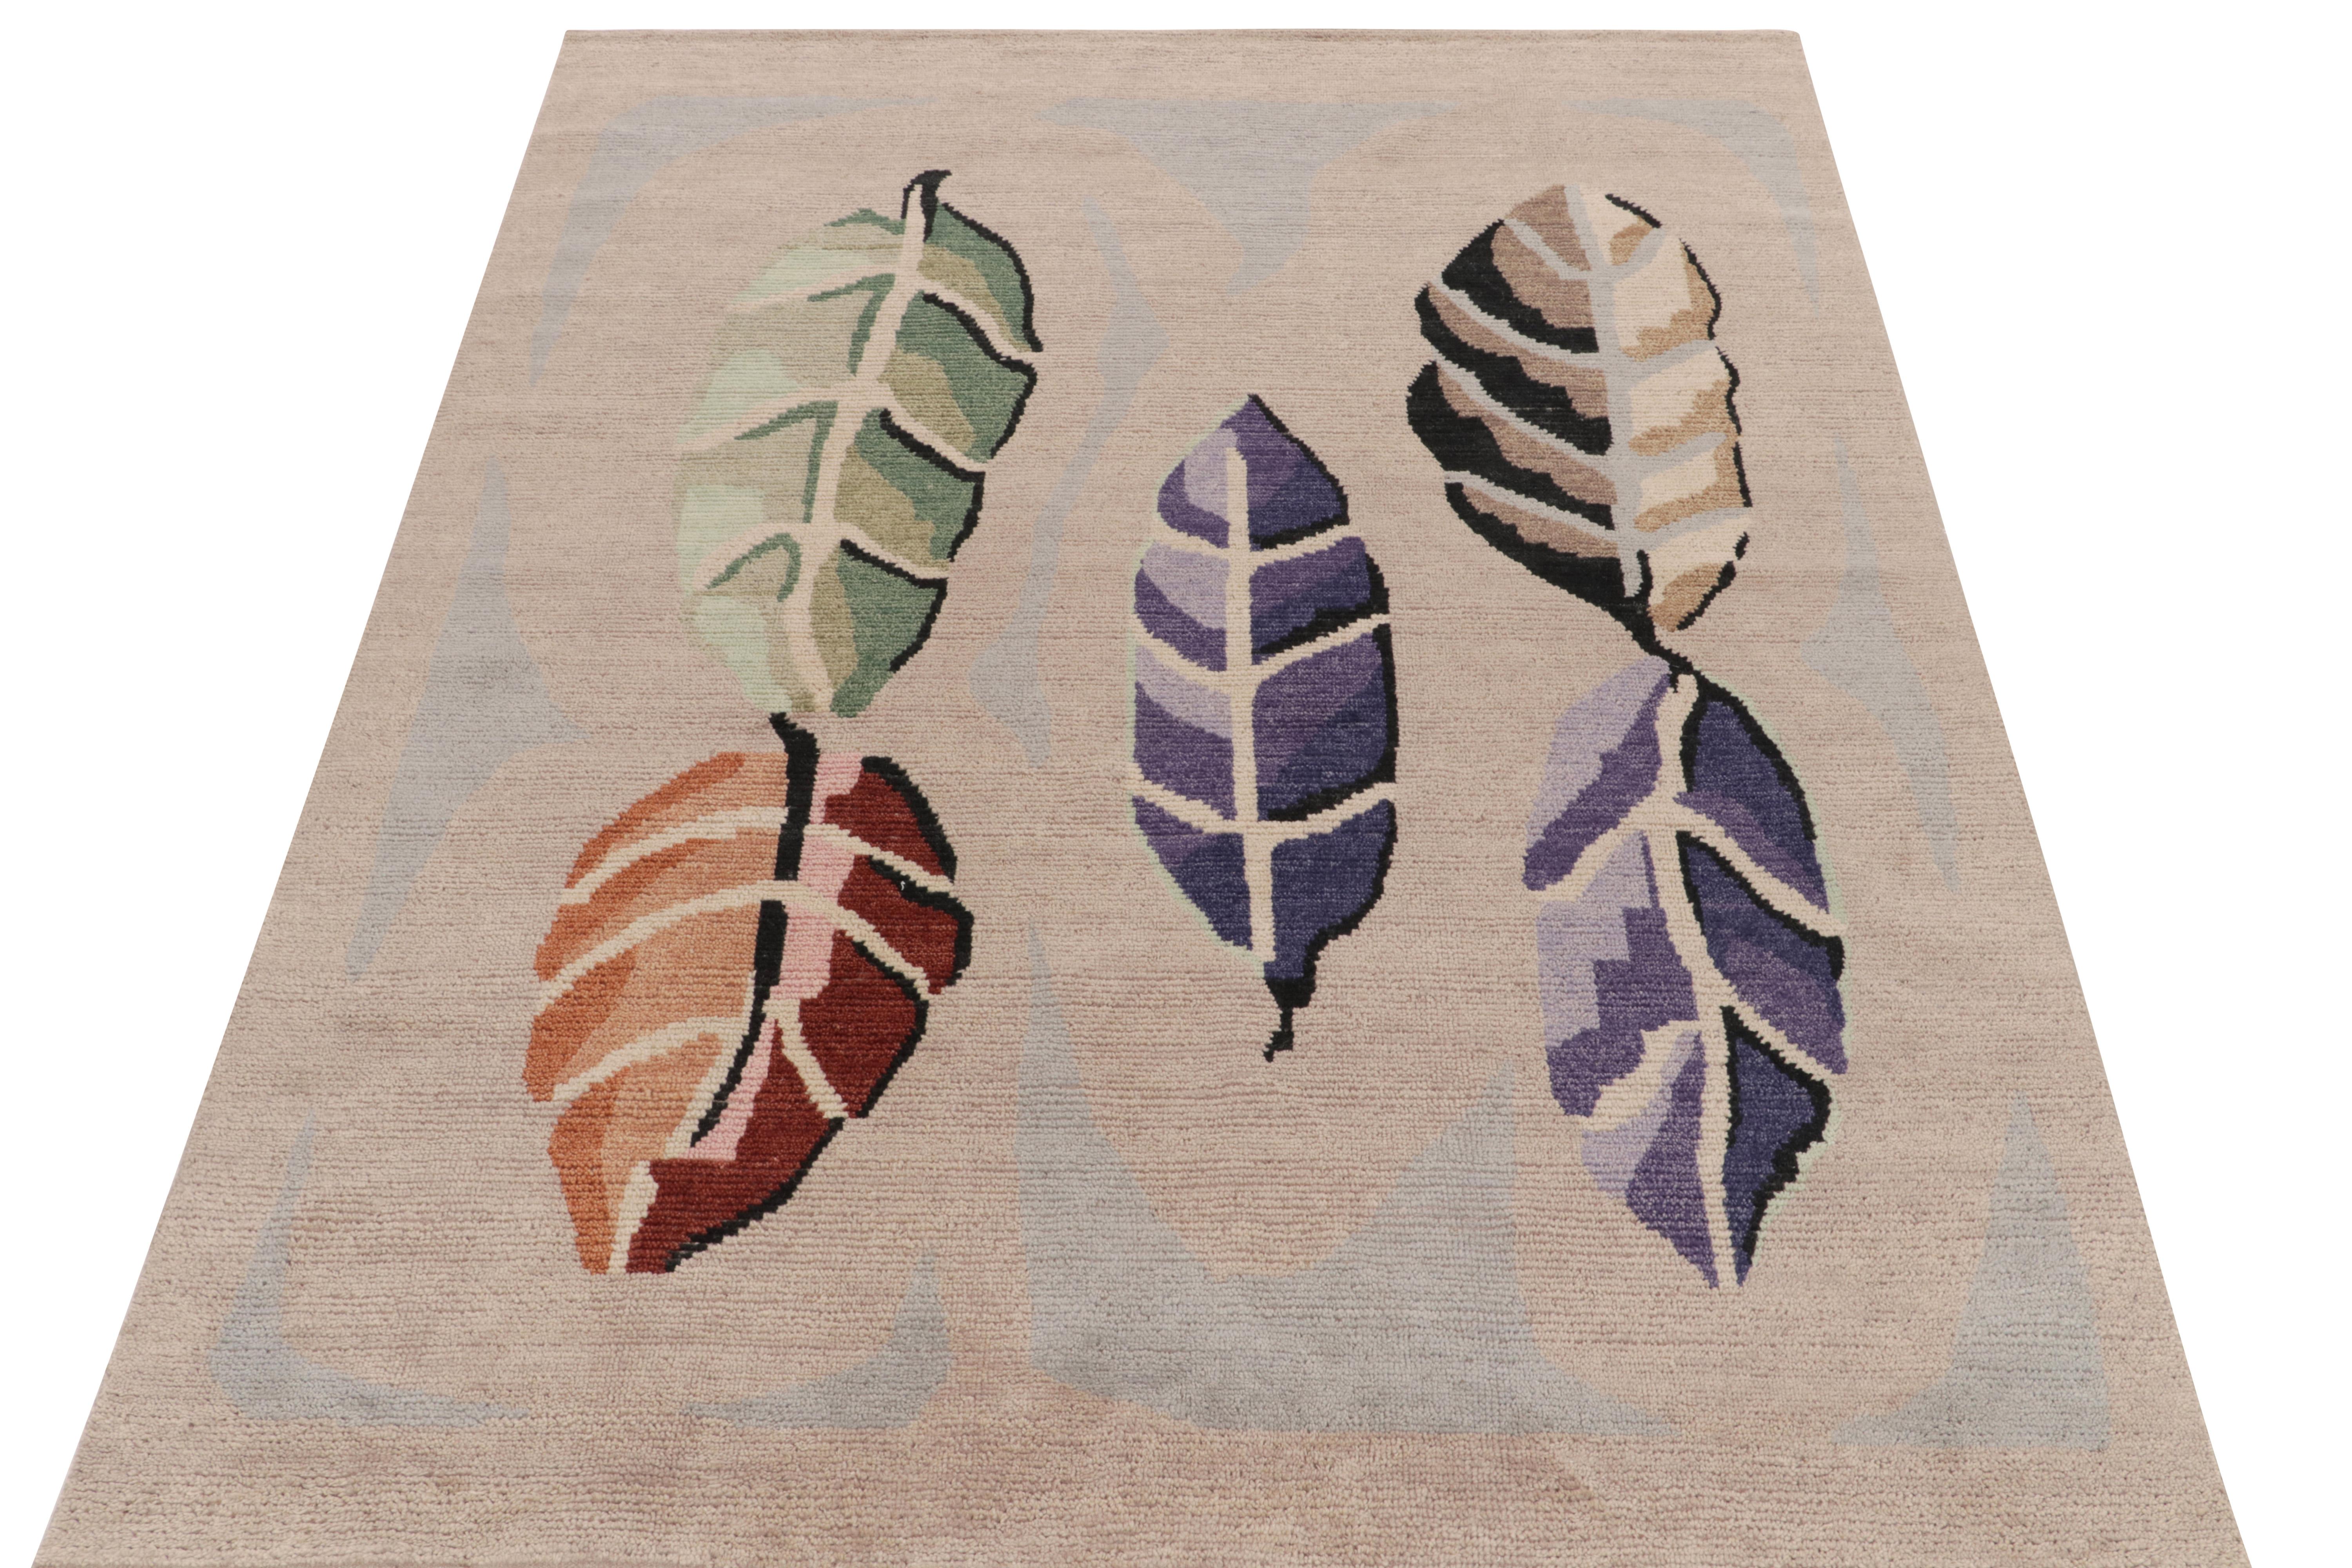 Inspiriert von den feinsten alten schwedischen Rya-Teppichen, ein 6x8 handgewebtes Stück aus unserer preisgekrönten skandinavischen Auswahl. Die üppige Flortextur bringt ein beige-braunes, orange, indigoblaues und grünes Blattwerk zum Vorschein, das